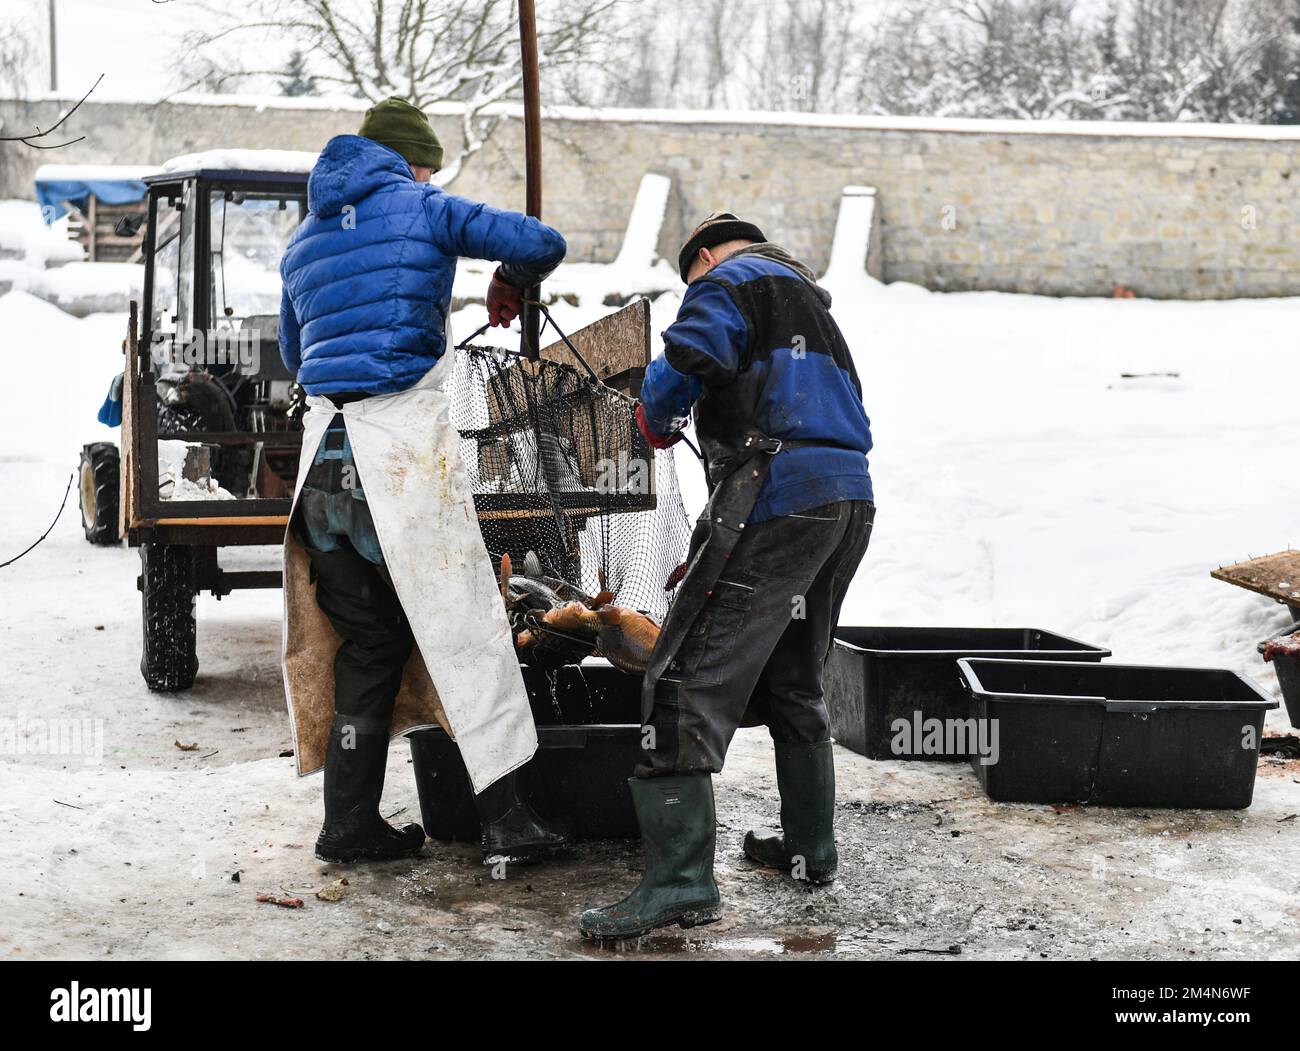 Los pescadores capturan carpas para vender unos días para Navidad. En  Staniatki, cerca de Cracovia, las monjas del monasterio benedictino venden  carpas. Las carpas son una tradición en Polonia cuando se sirven